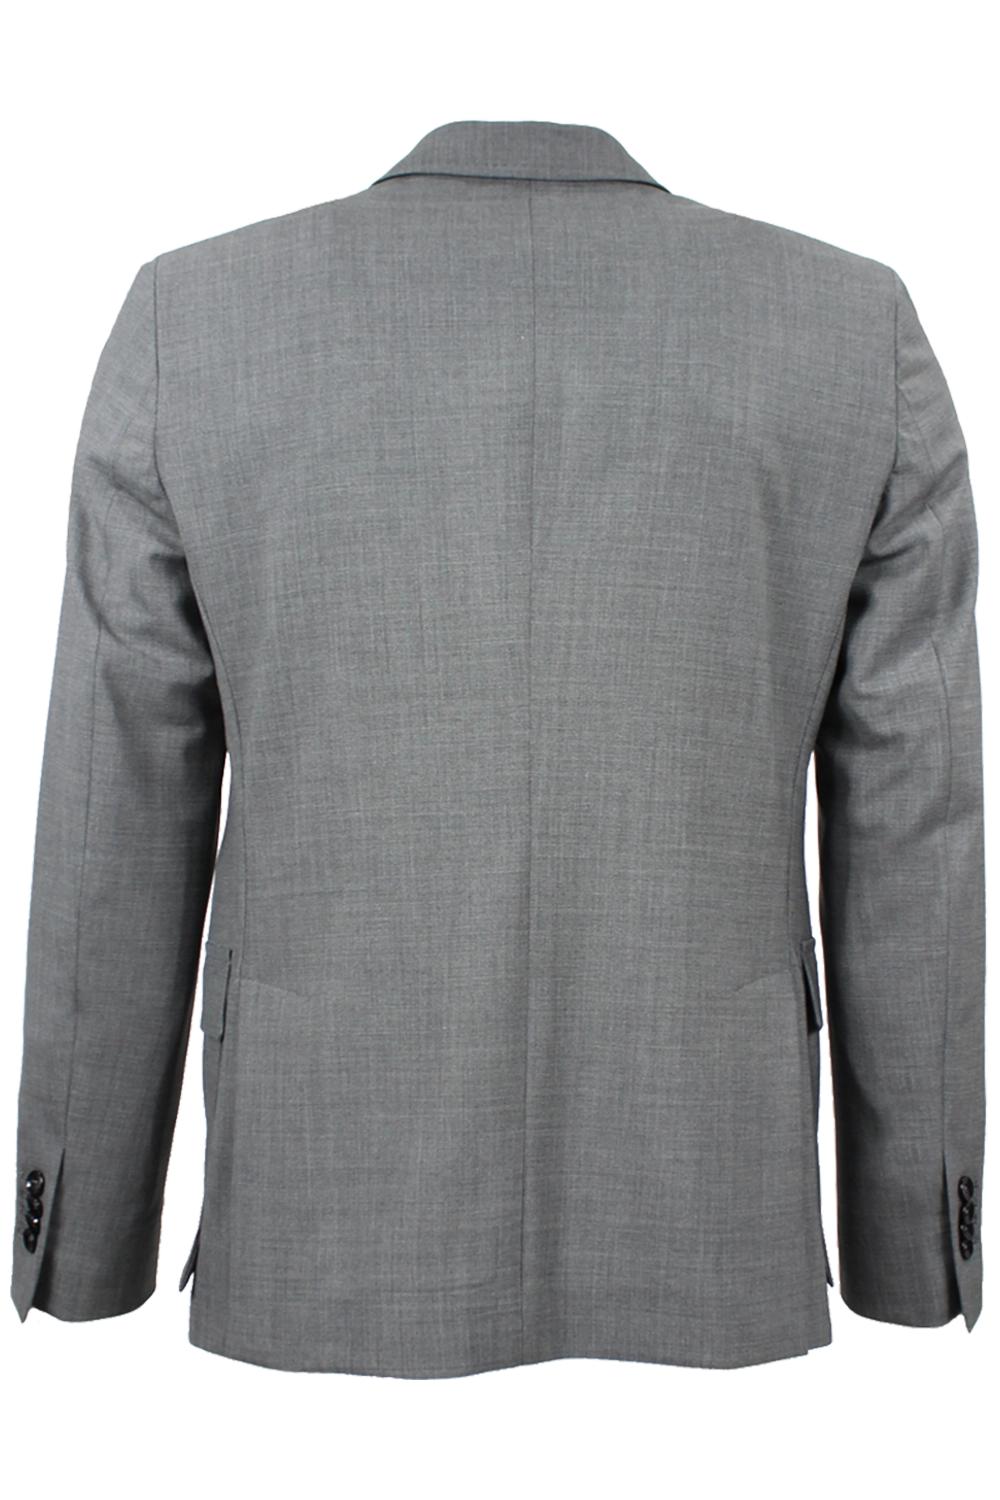 Giacca in tela di lana grigio chiaro retro